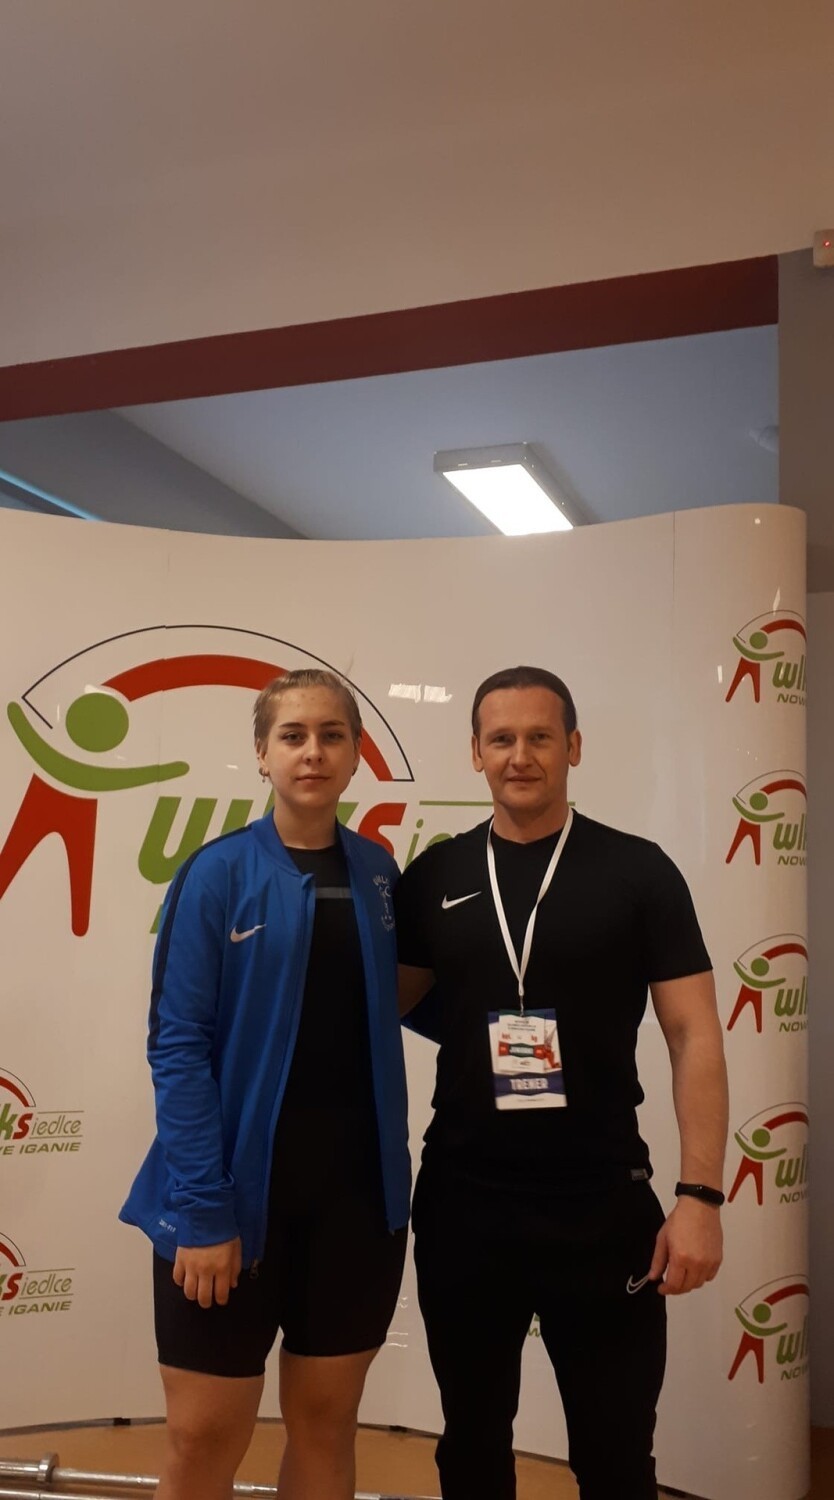 Katarzyna Kozera, sztangistka UMLKS Radomsko walczy w Mistrzostwach Świata w Albanii